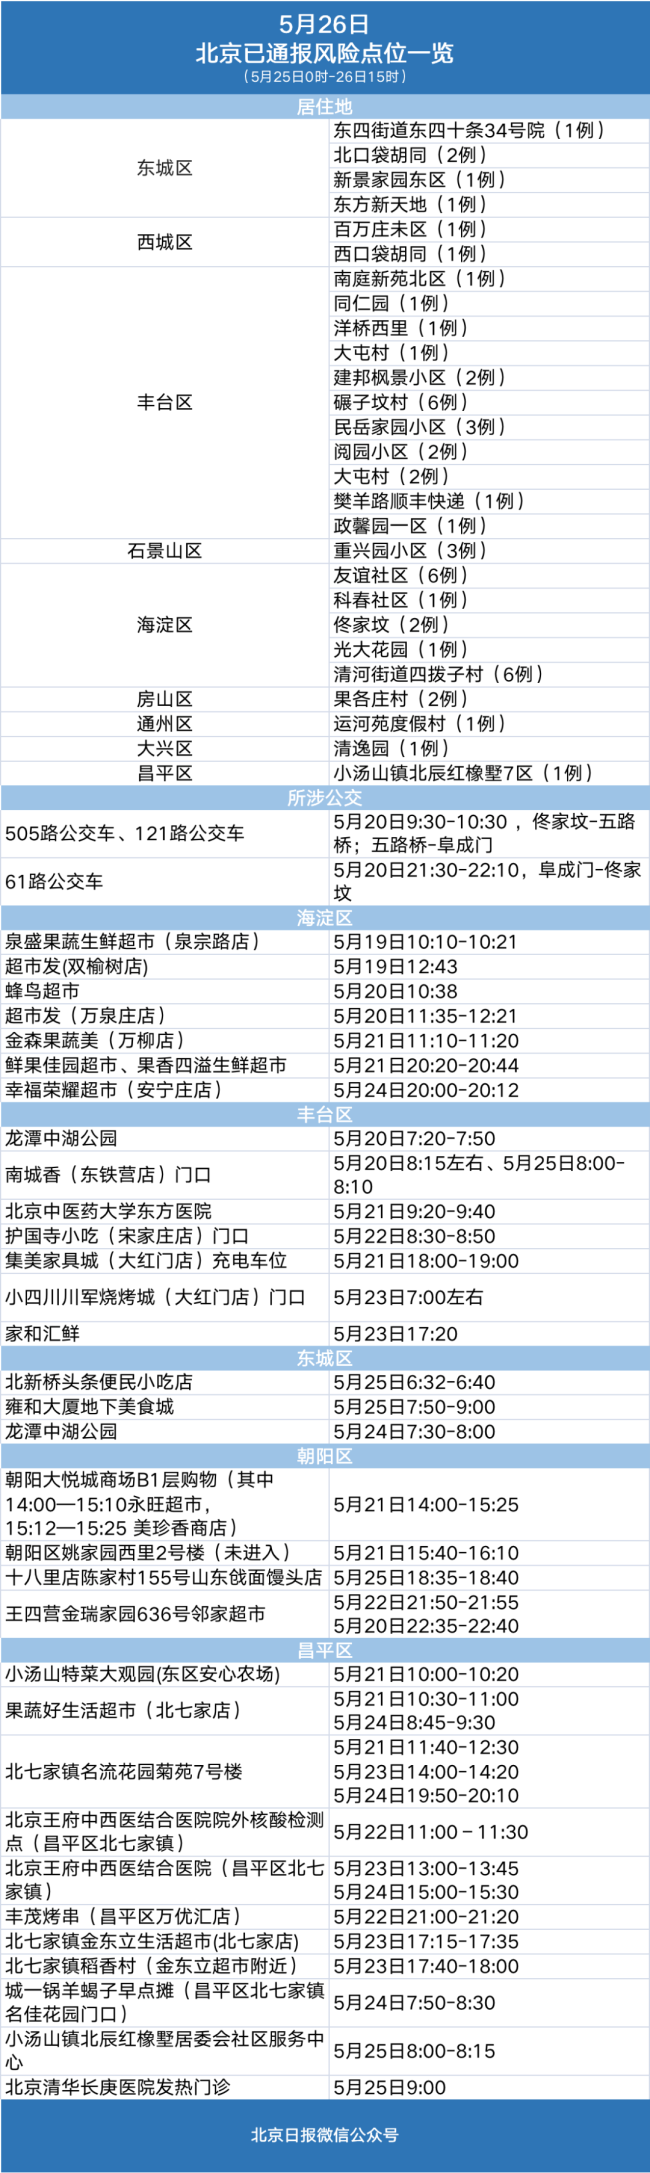 北京四区新增9例社会面筛查感染者 风险点位一览